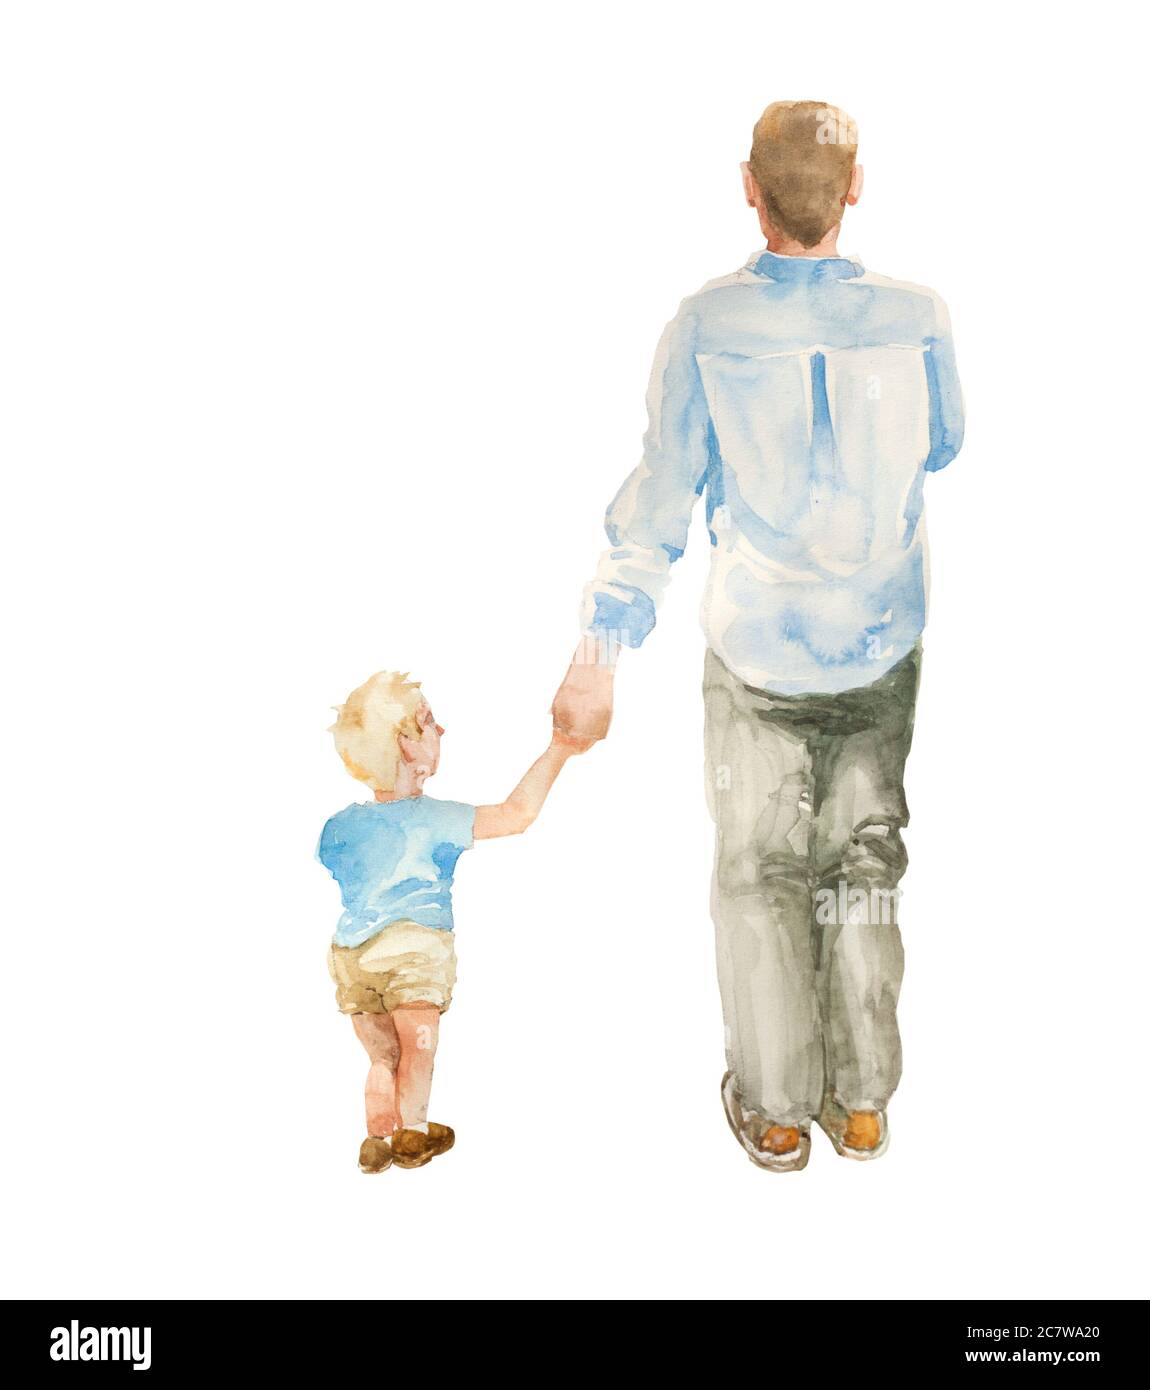 Vue arrière de père et de fils enfant qui se rassemblent sur fond blanc. Illustration aquarelle originale de la paternité Banque D'Images